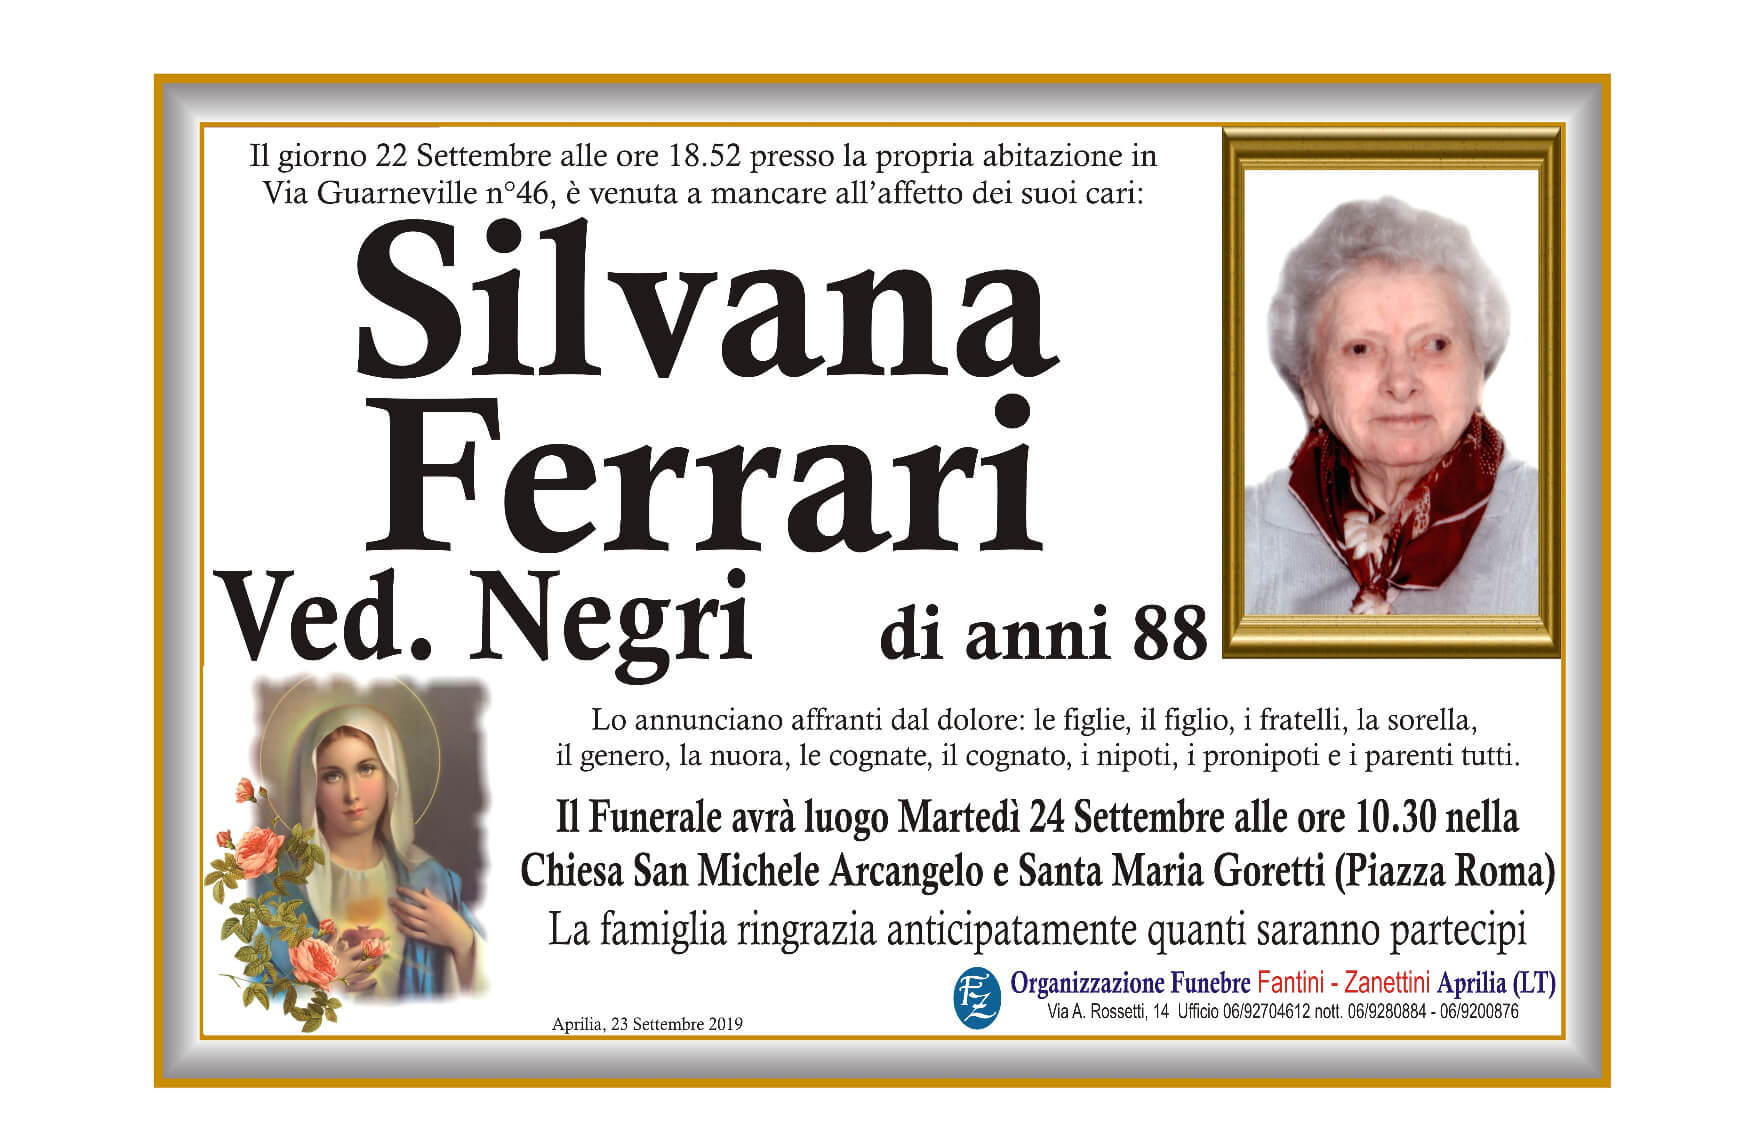 Silvana Ferrari